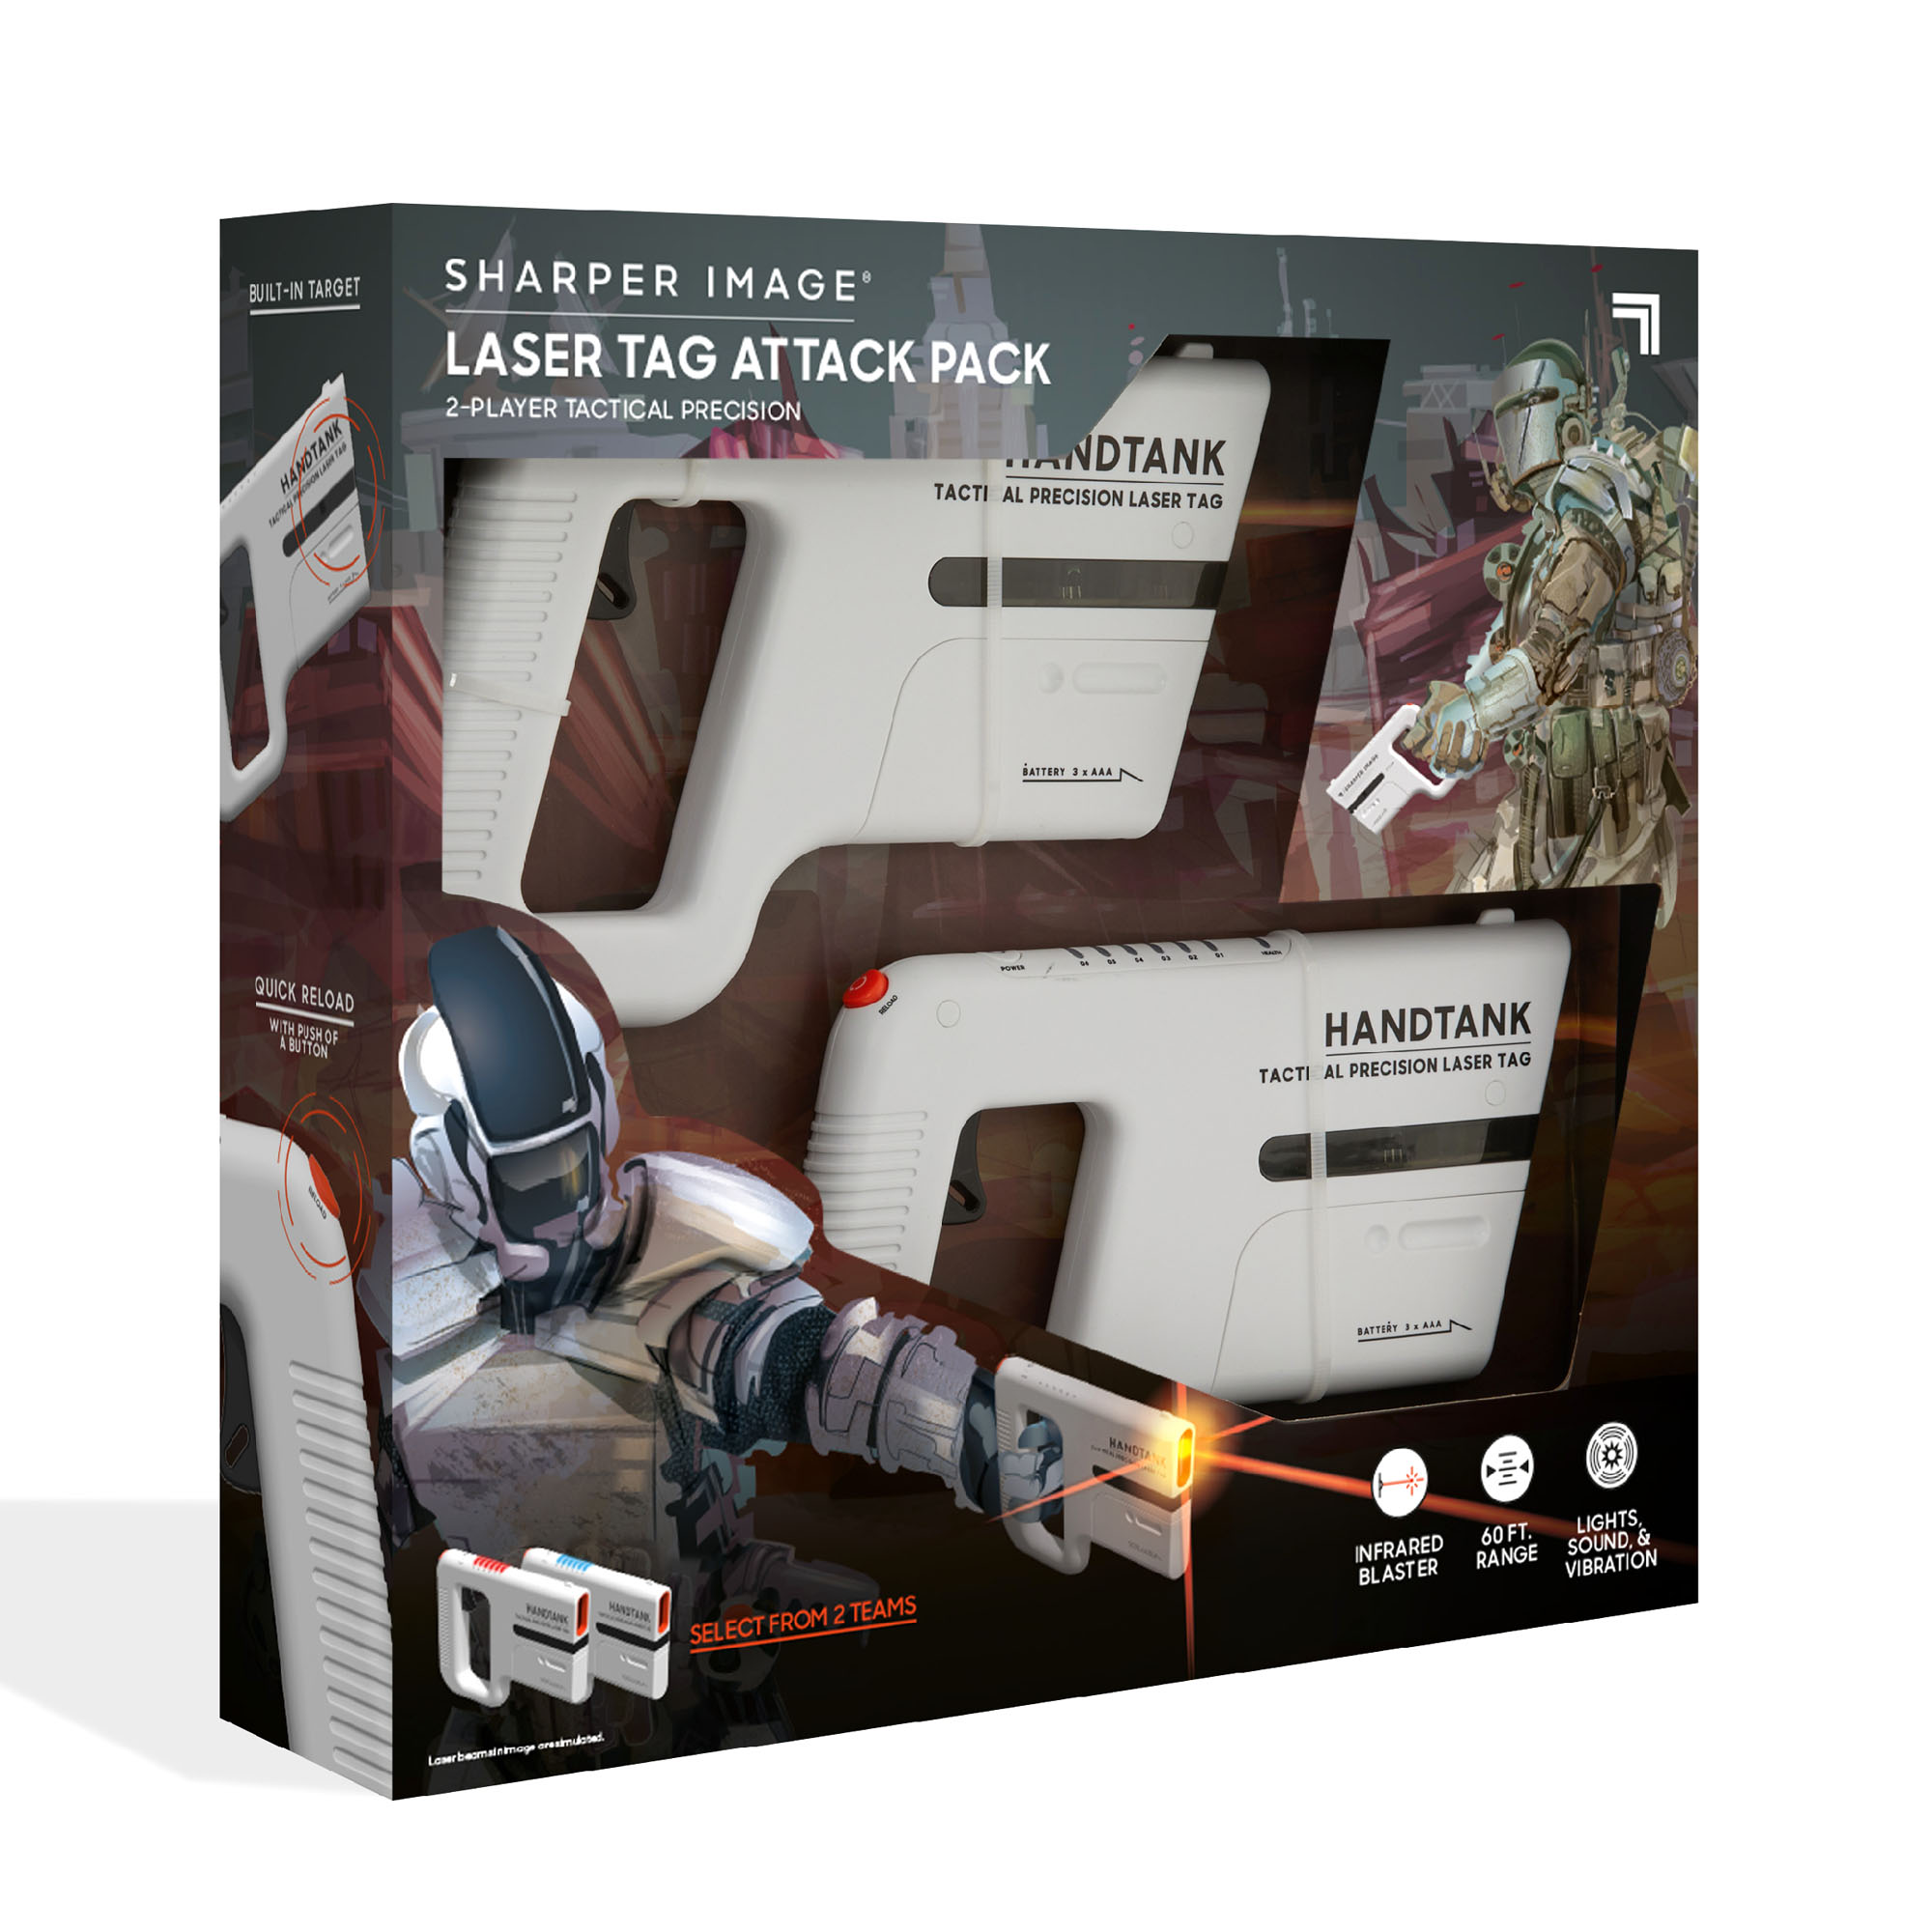 Handtank Laser Tag Attack Pack Sharper Image in Vendita Online